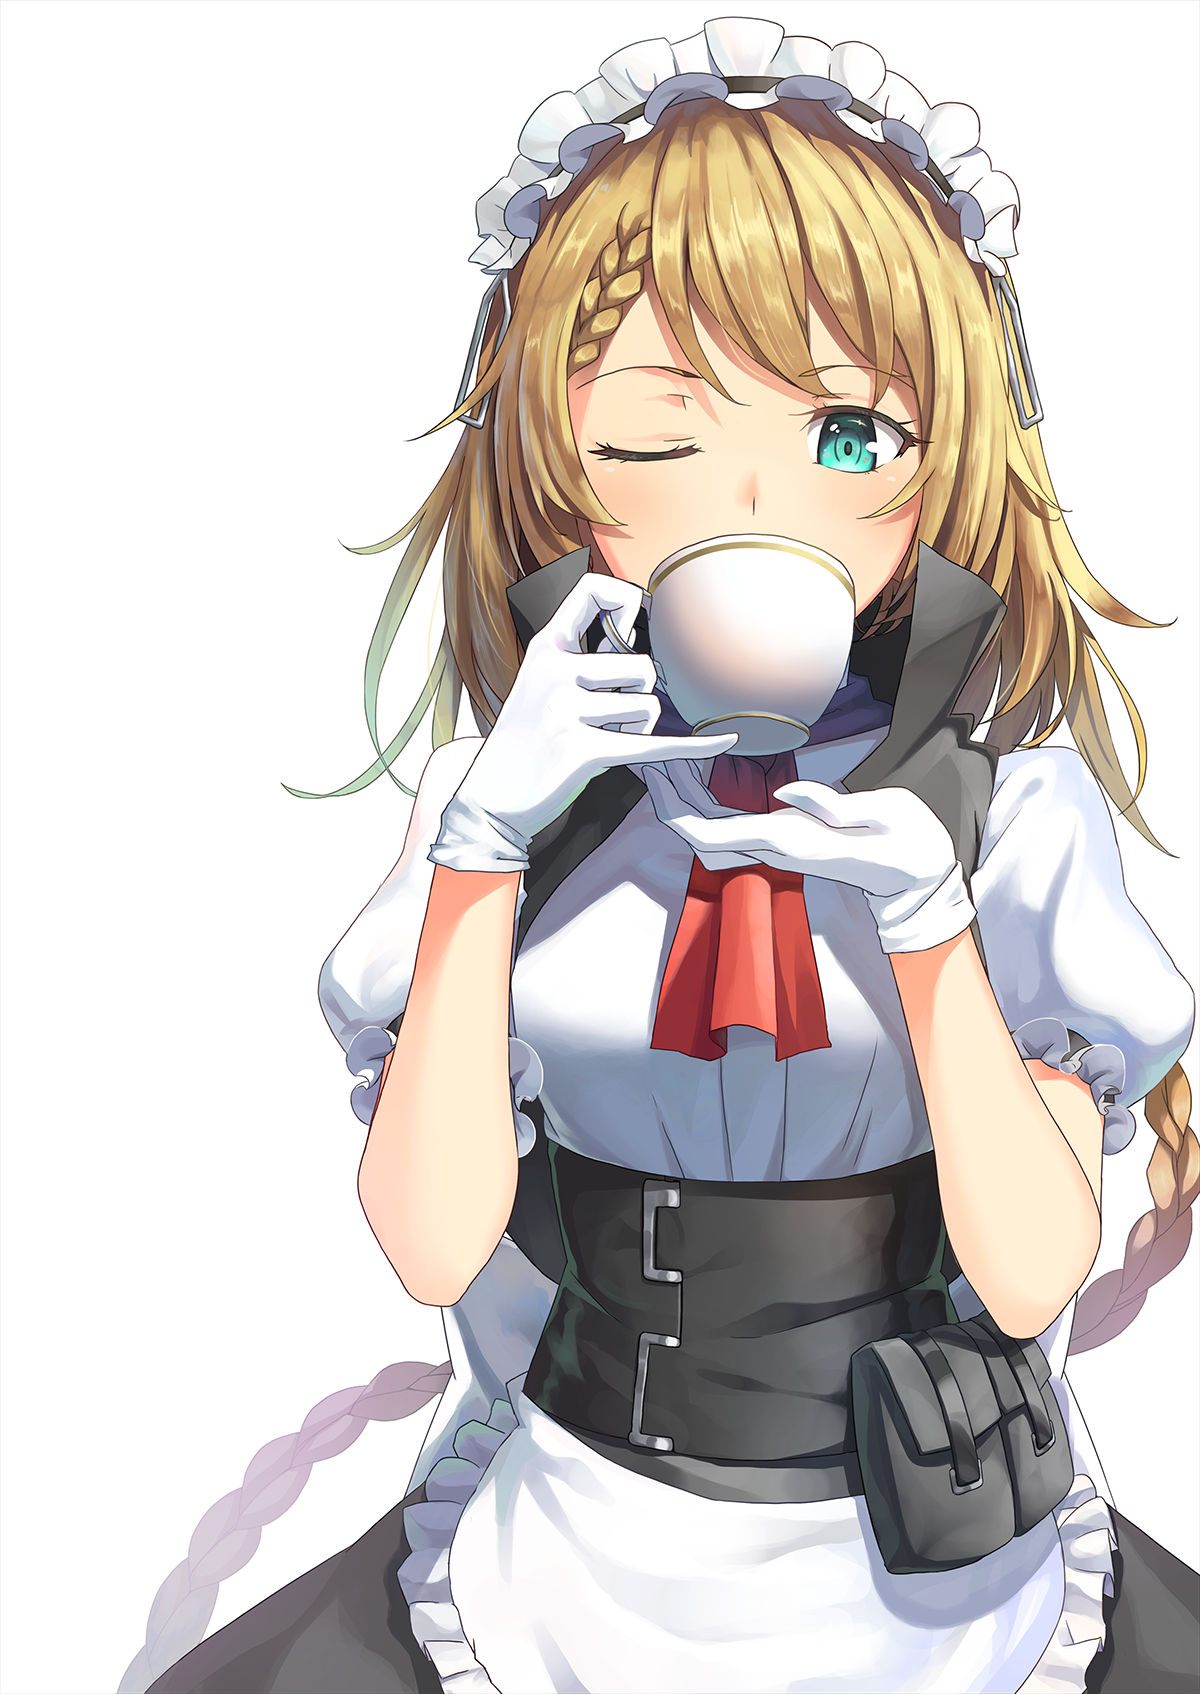 Cute anime girl G36 drinking tea: Girls' Frontline (Artist: Vikpie)